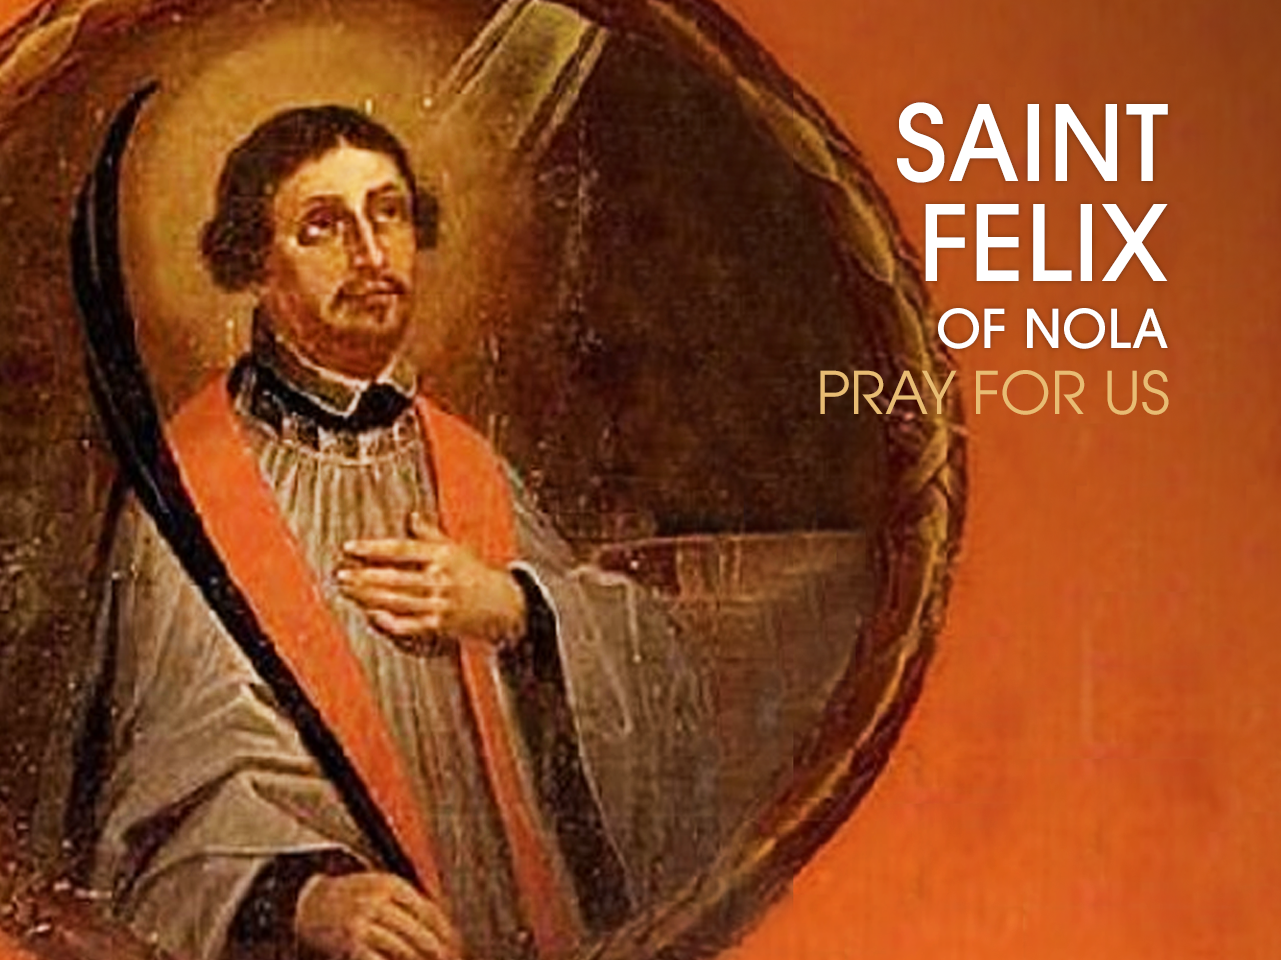 St. Felix of Nola